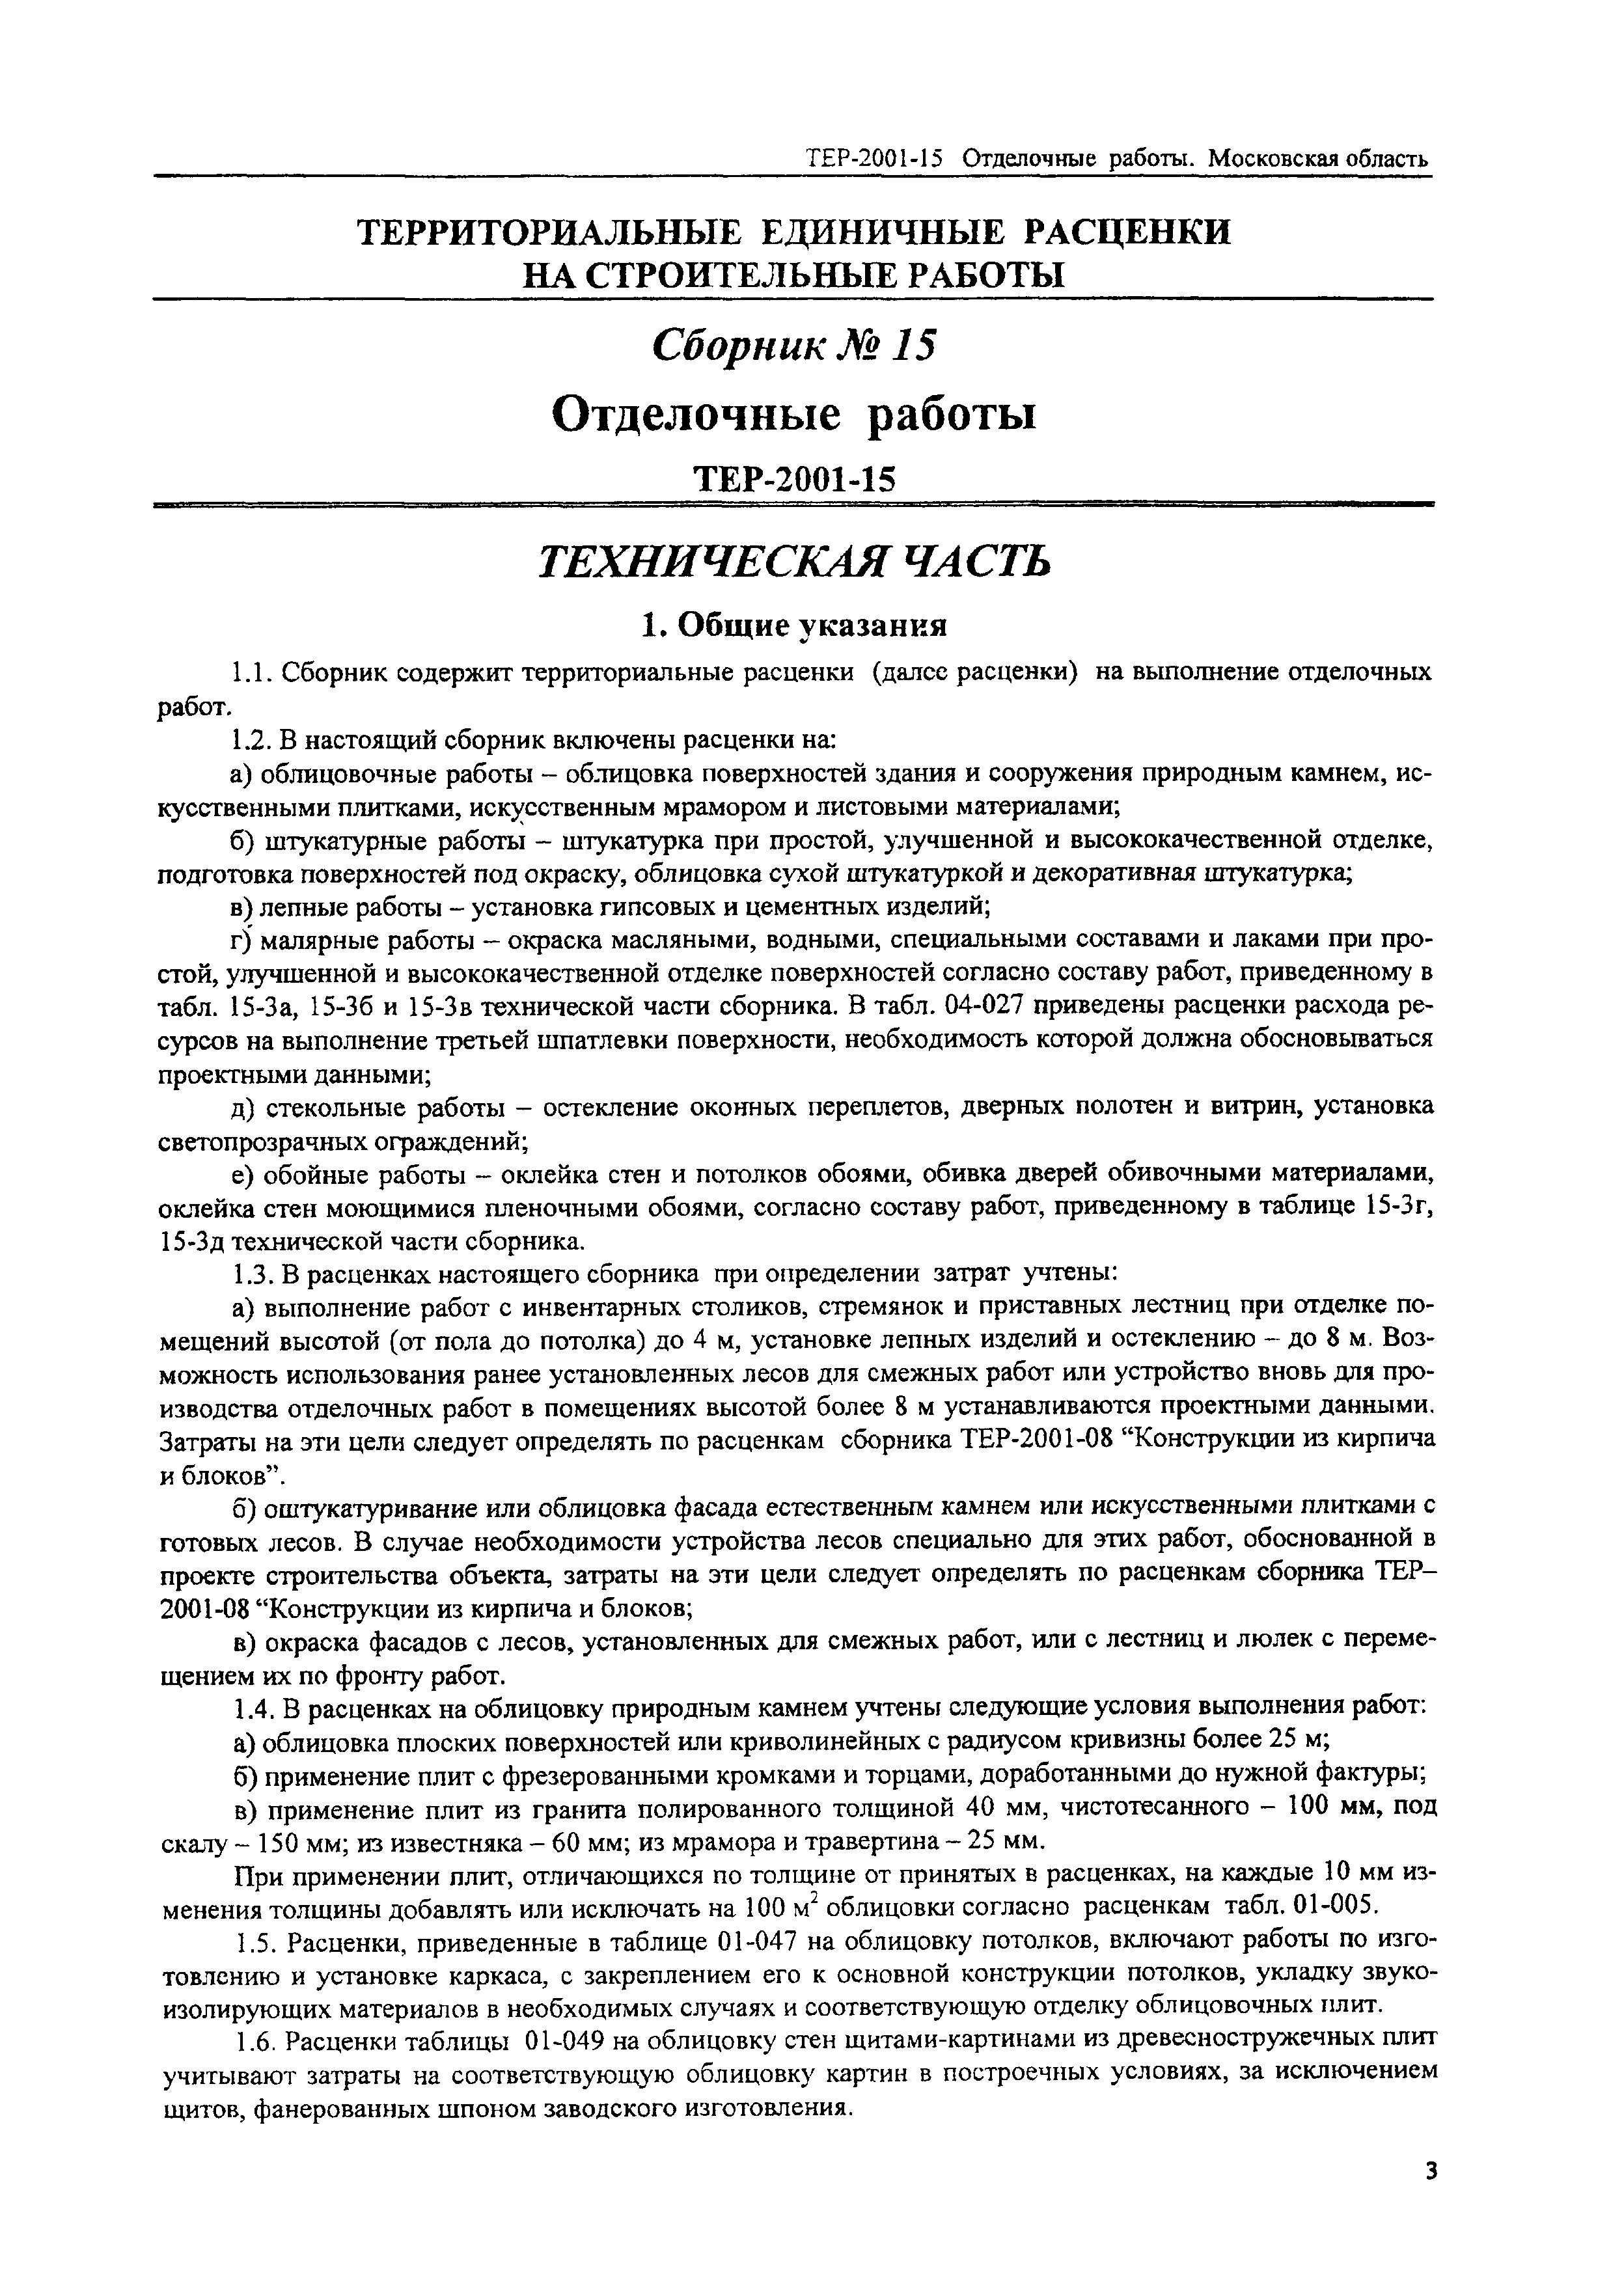 ТЕР 2001-15 Московской области